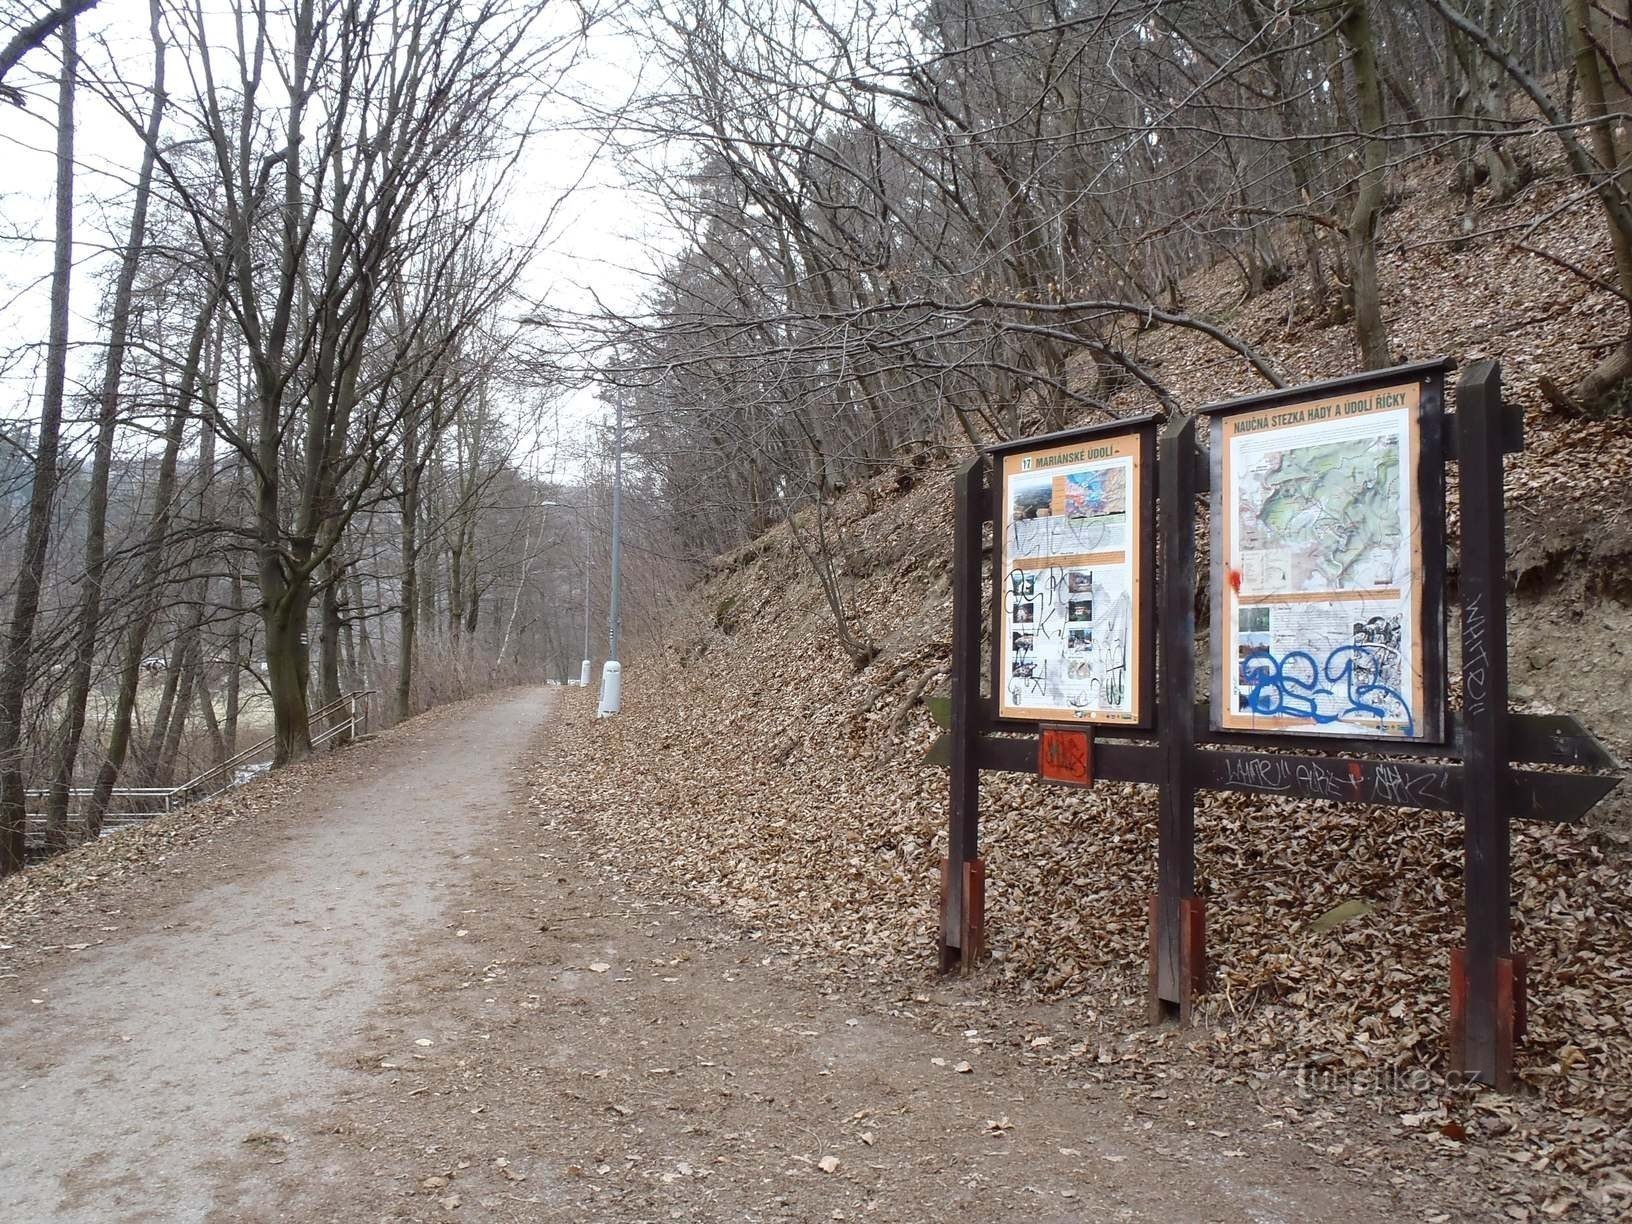 Jena ze ścieżek do Mariánské údolí (niebieski i czerwony znak) - 6.2.2012 lutego XNUMX r.